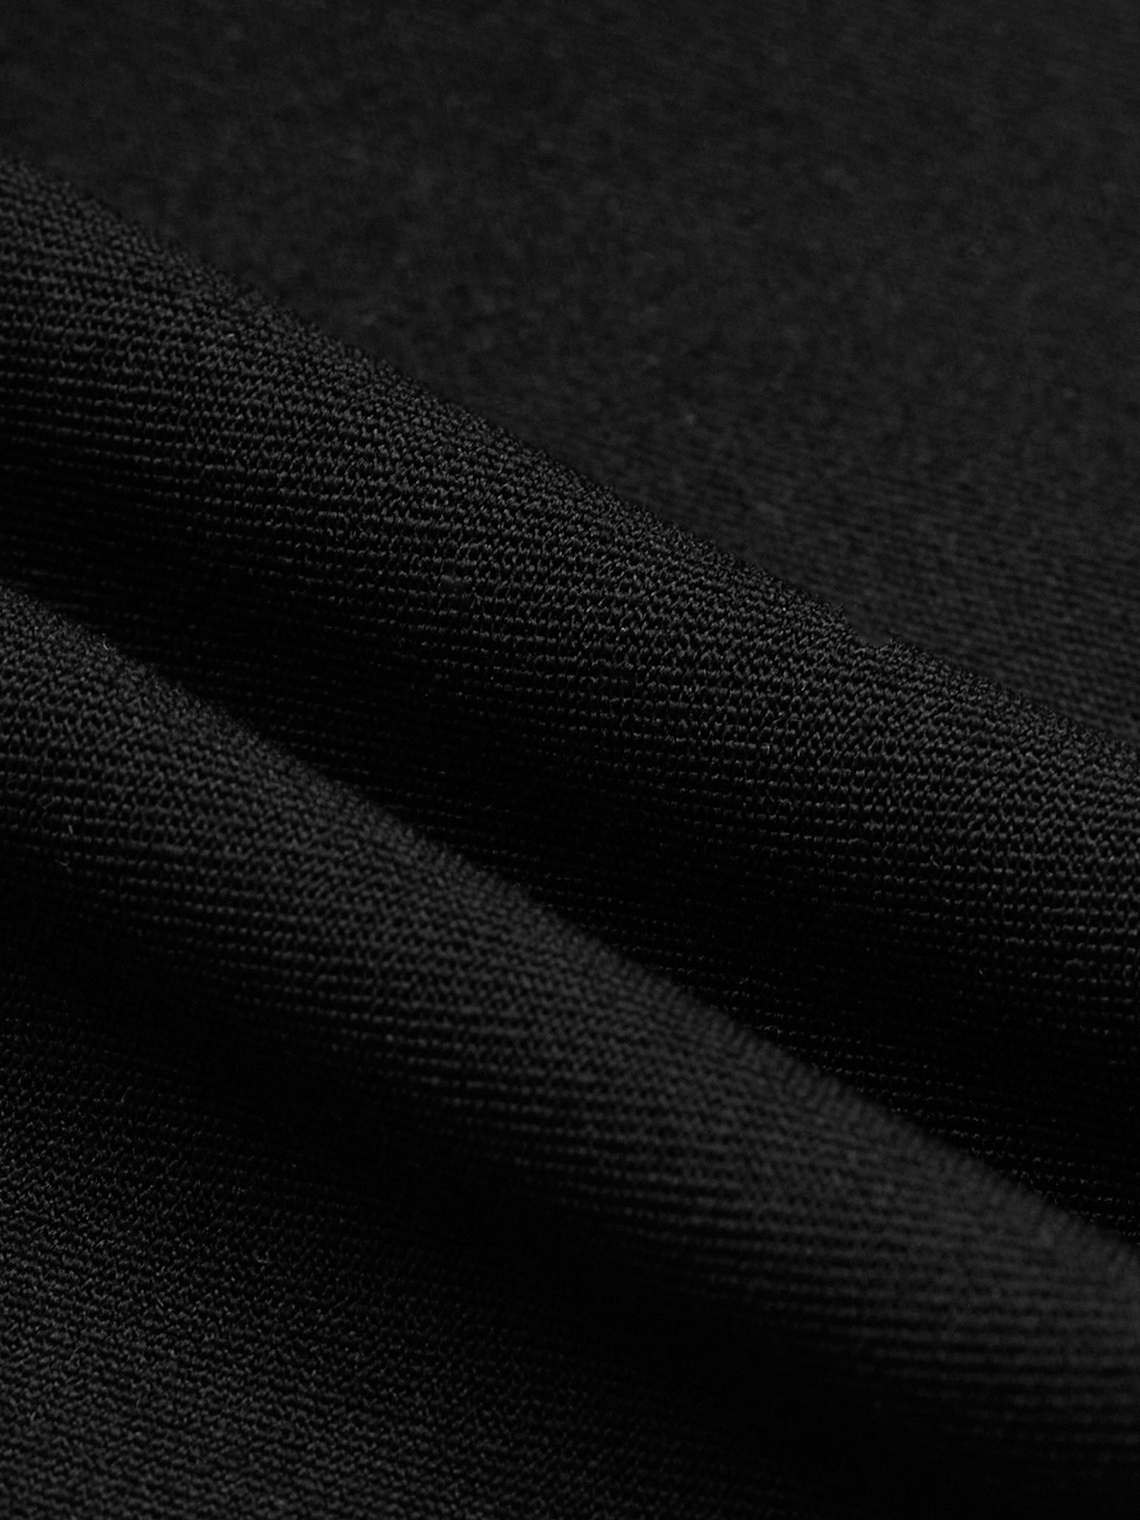 【Final Sale】Edgy Black Cut out Asymmetrical design Metal details Romper